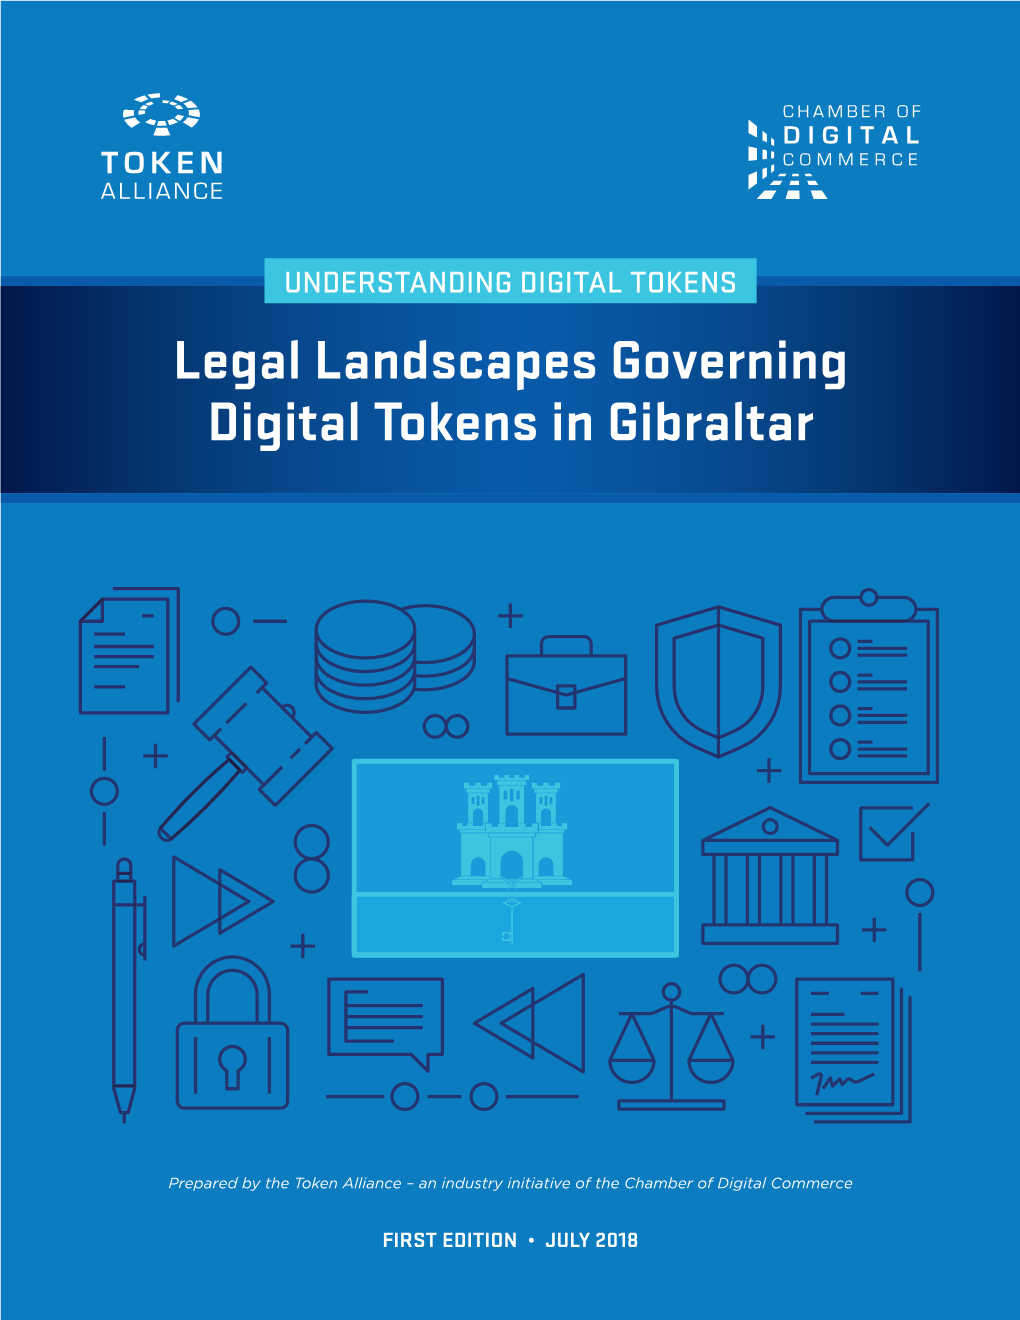 Legal Landscapes Governing Digital Tokens in Gibraltar